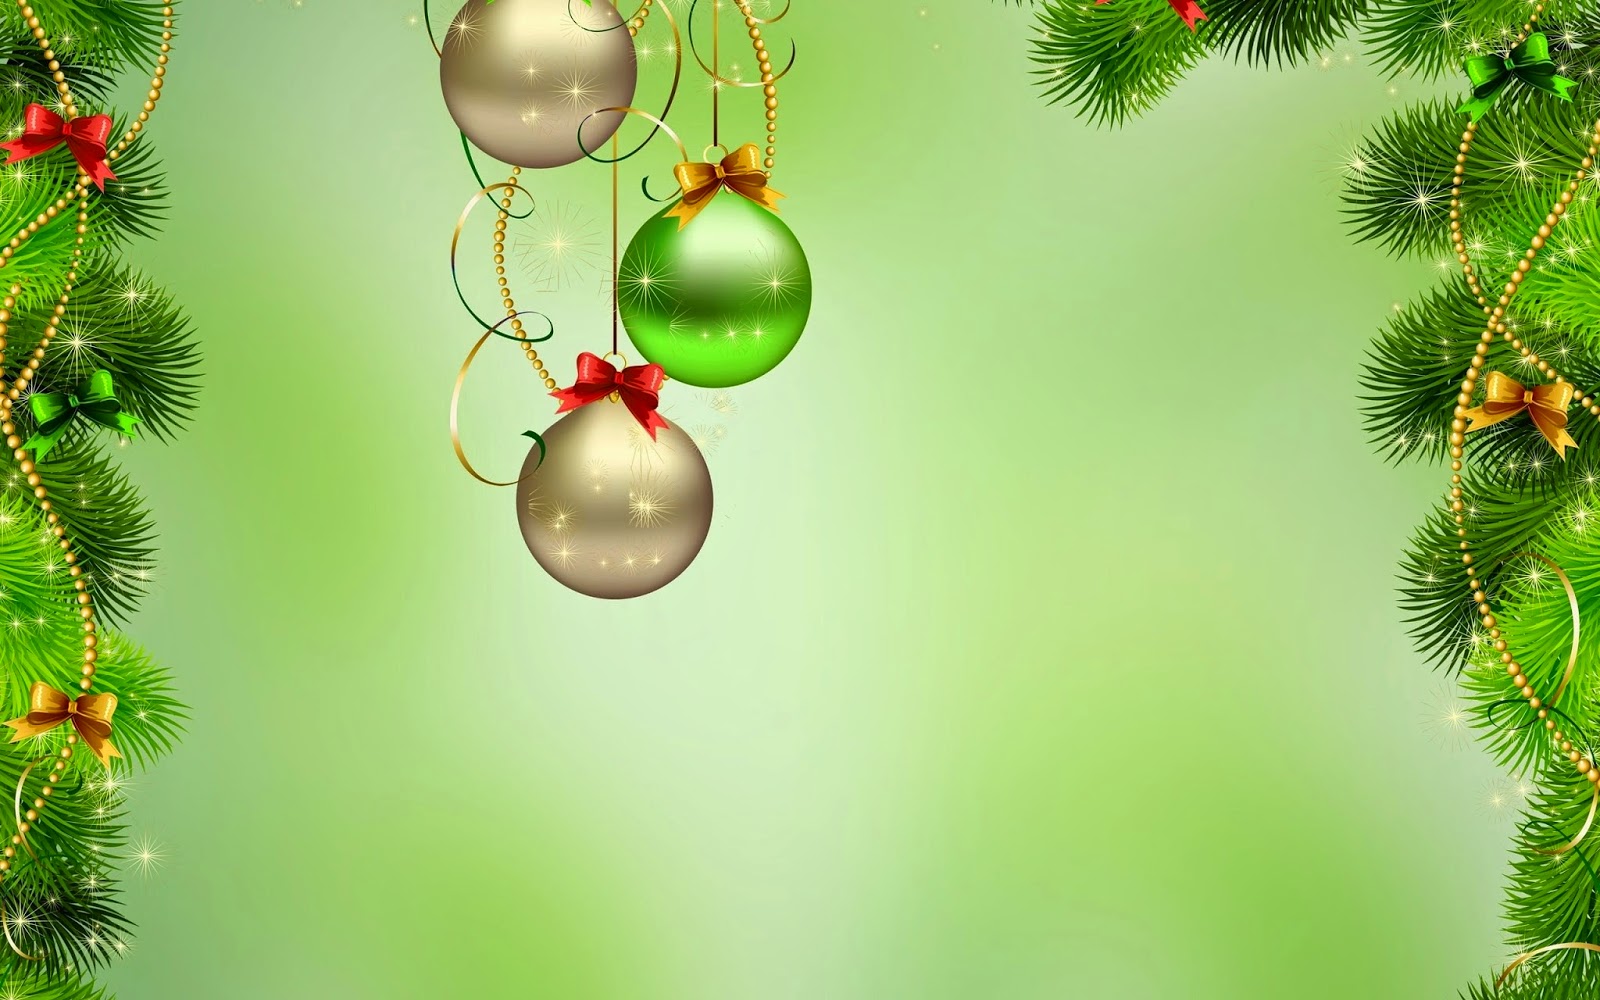 weihnachtskarte wallpaper,weihnachtsschmuck,grün,weihnachtsdekoration,baum,weihnachtsbaum